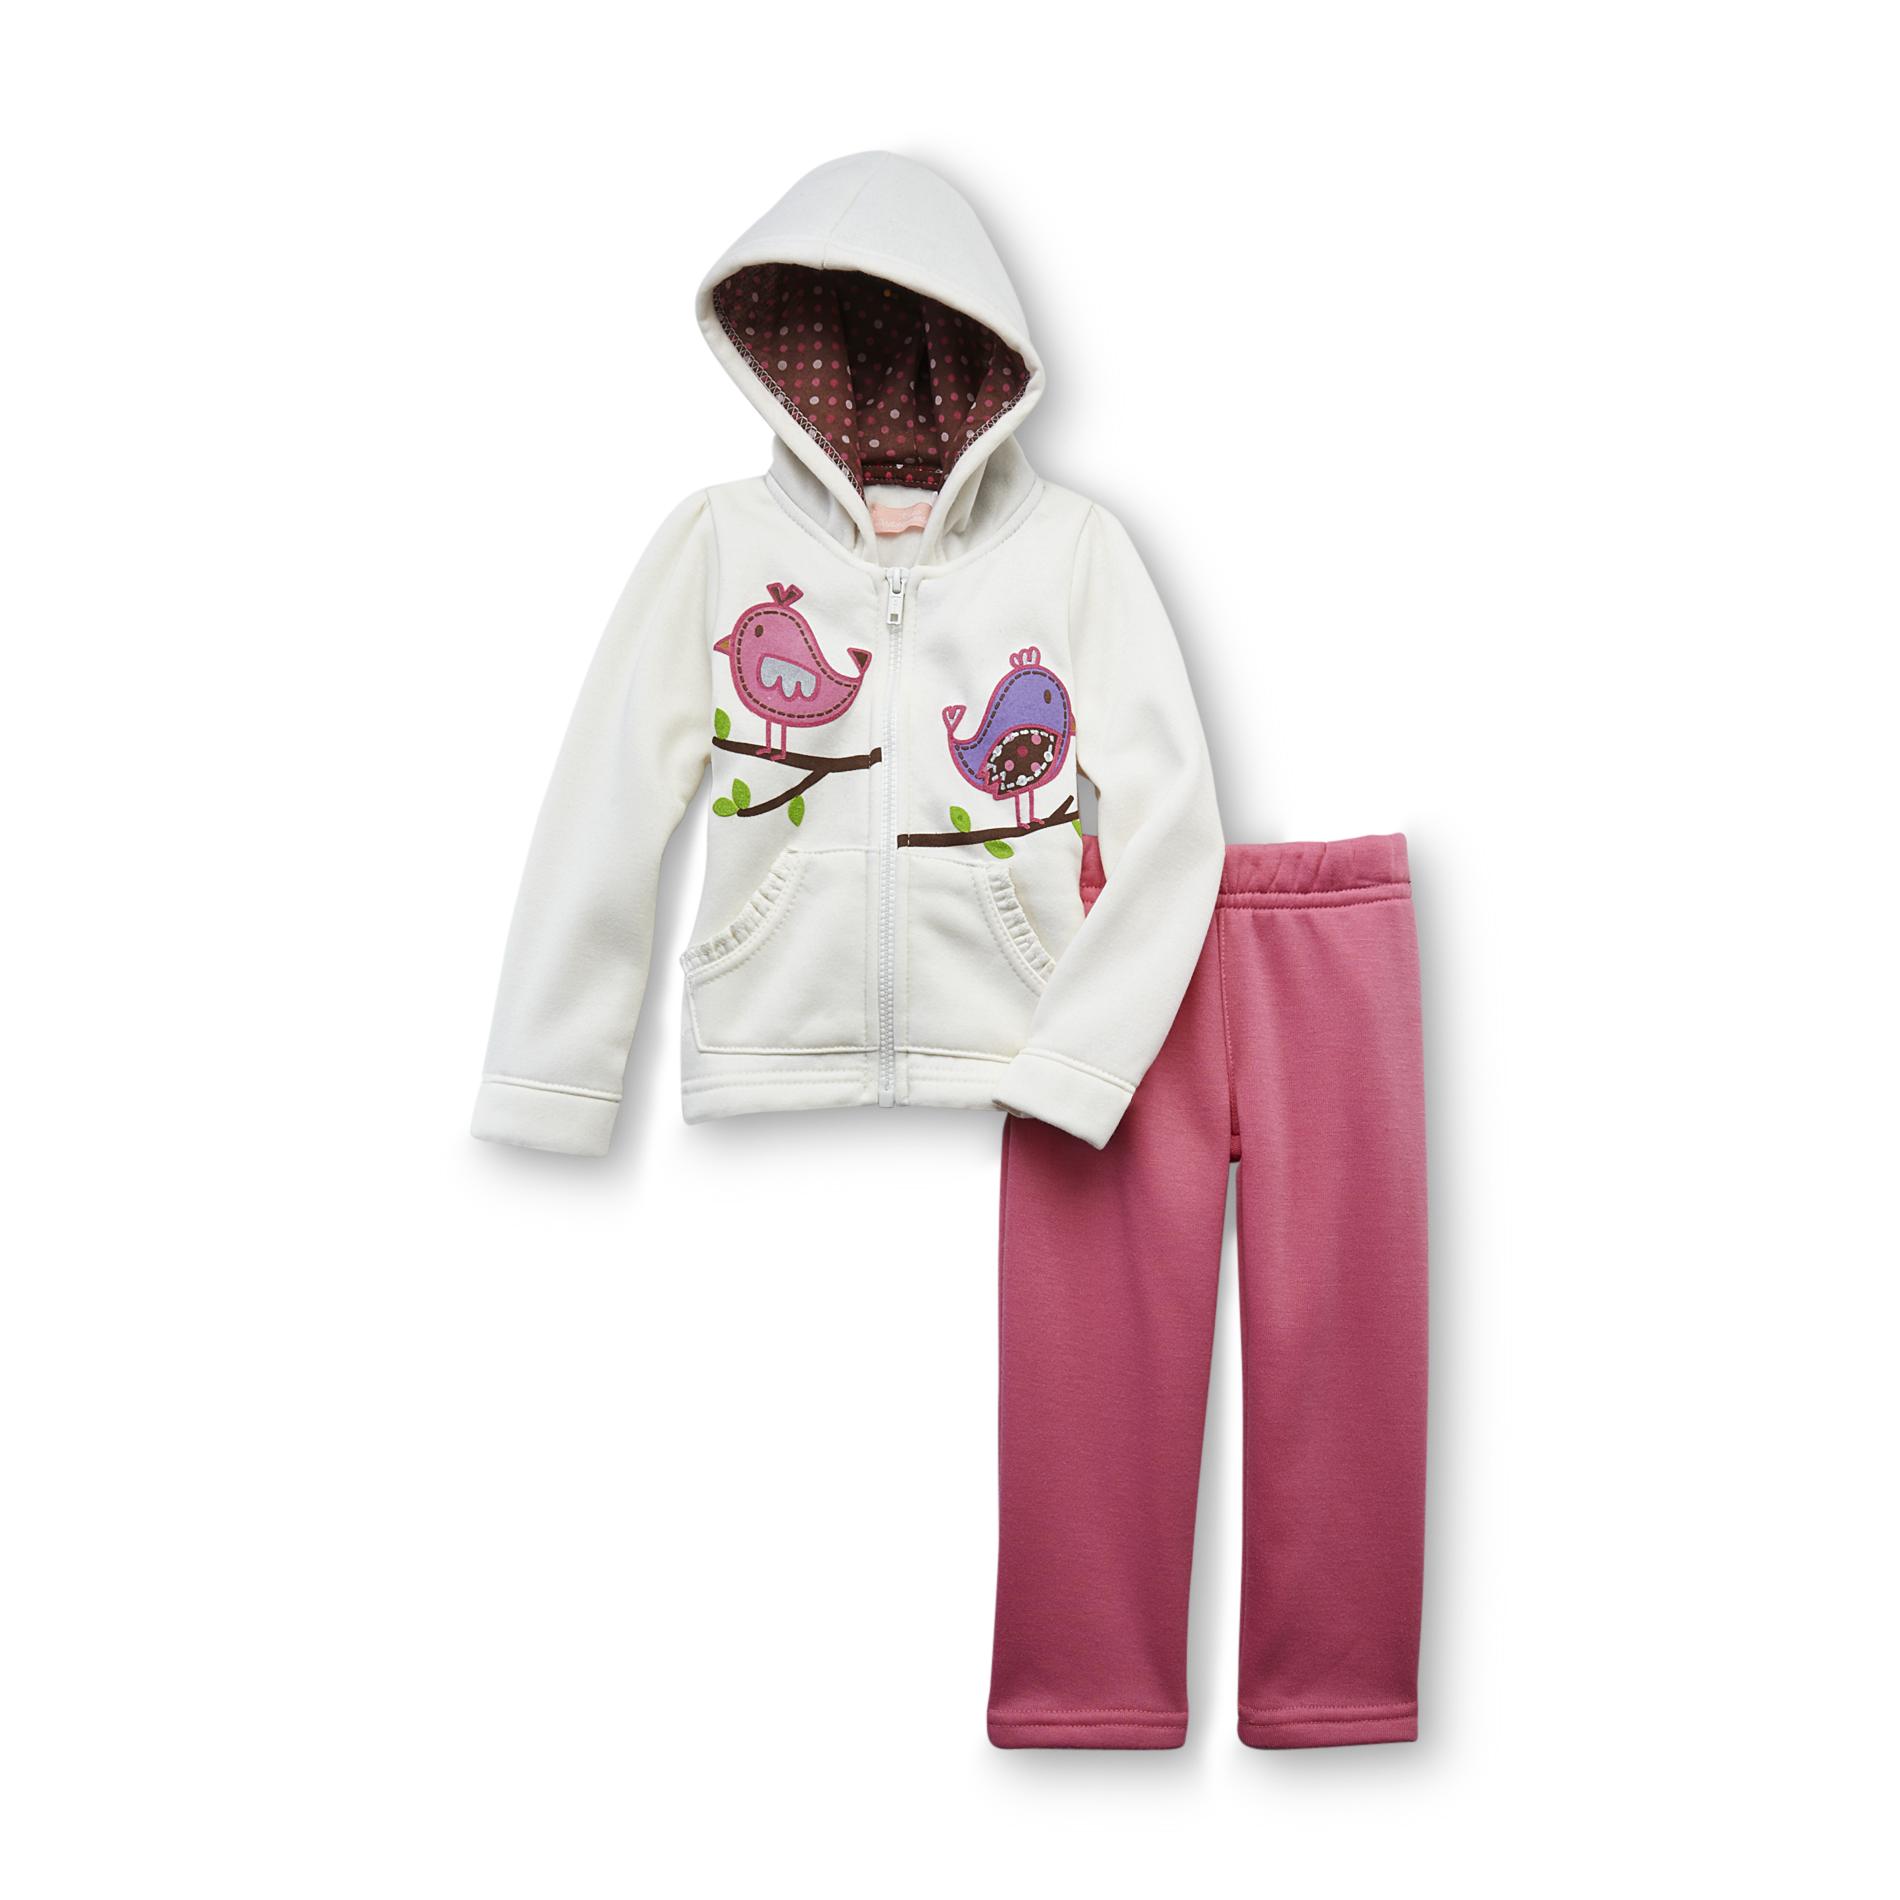 Kids Headquarters Infant & Toddler Girl's Fleece Hoodie Jacket & Pants - Birds